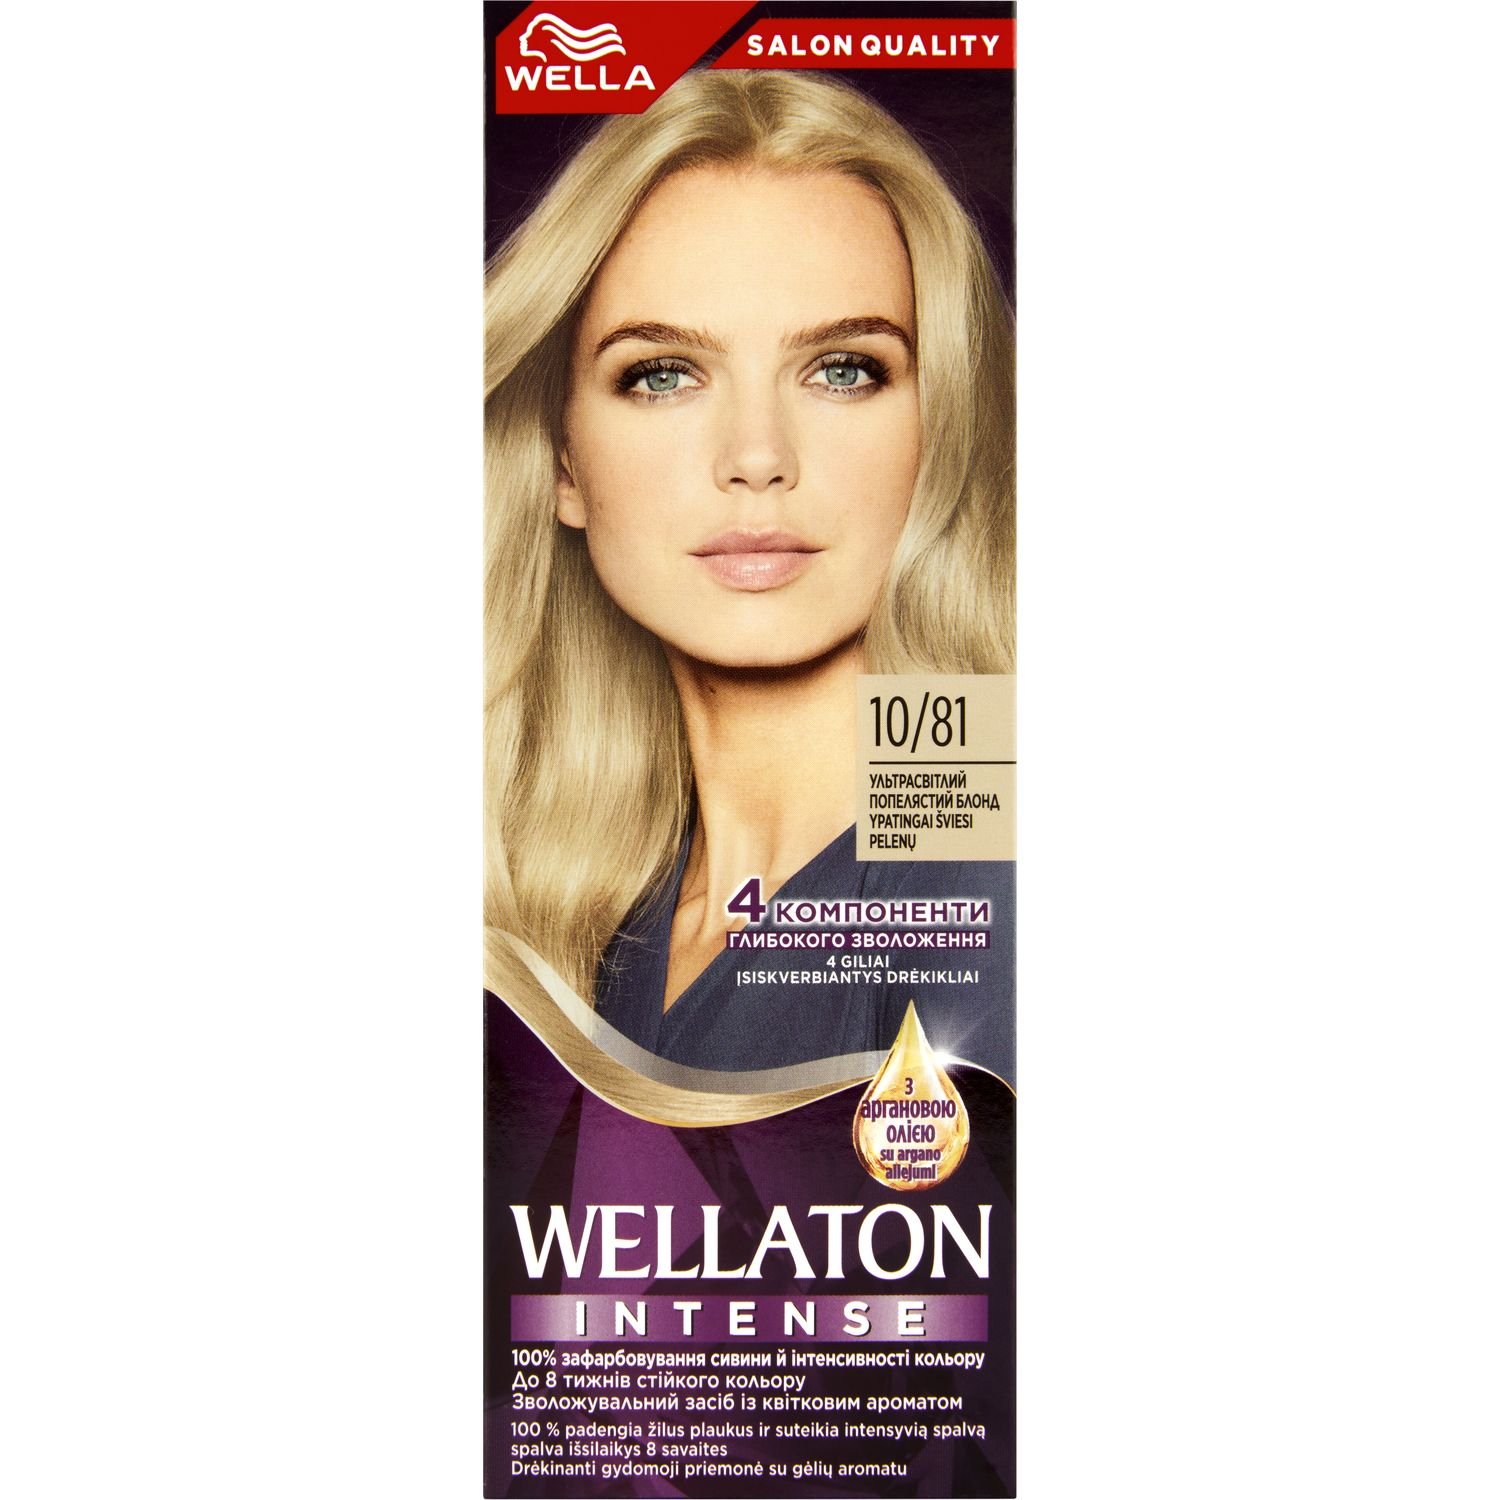 Интенсивная крем-краска для волос Wellaton, оттенок 10/81 (Ультра светлый пепельный блонд), 110 мл - фото 1